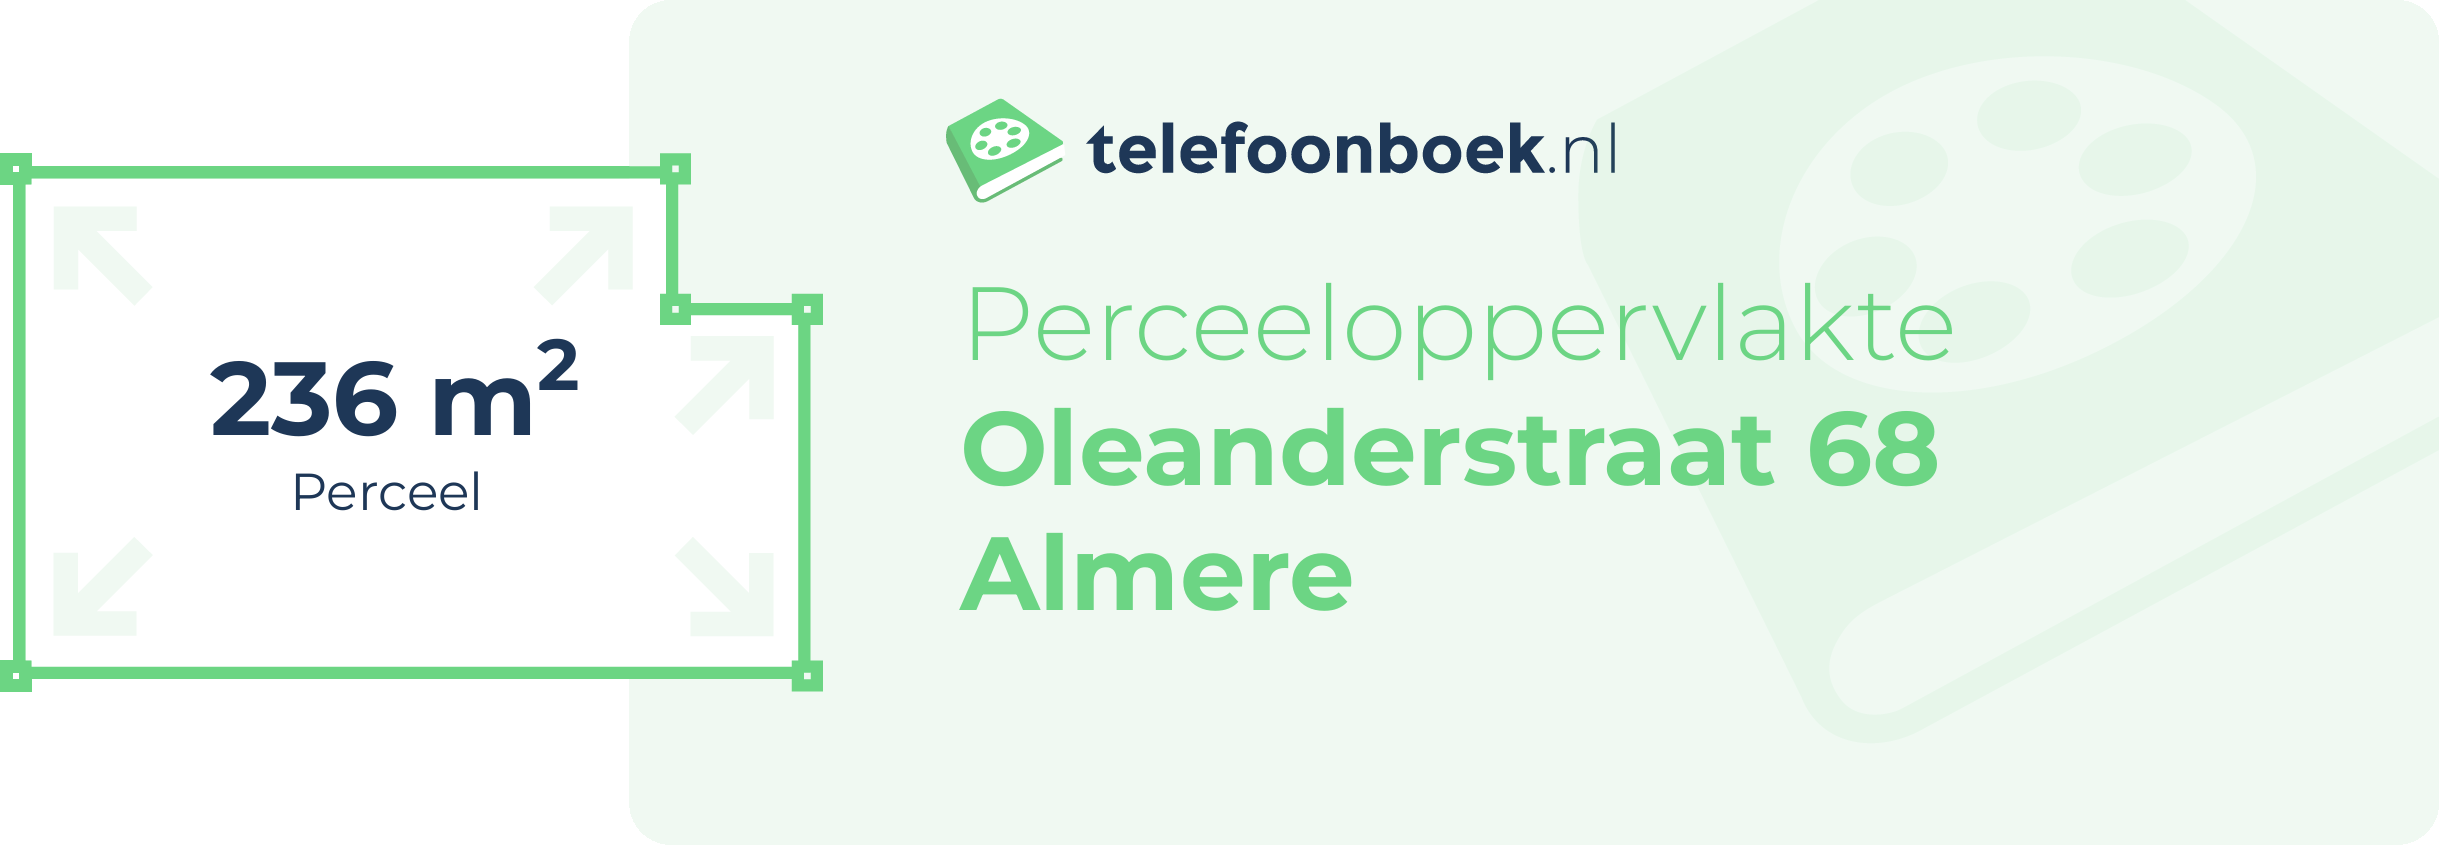 Perceeloppervlakte Oleanderstraat 68 Almere